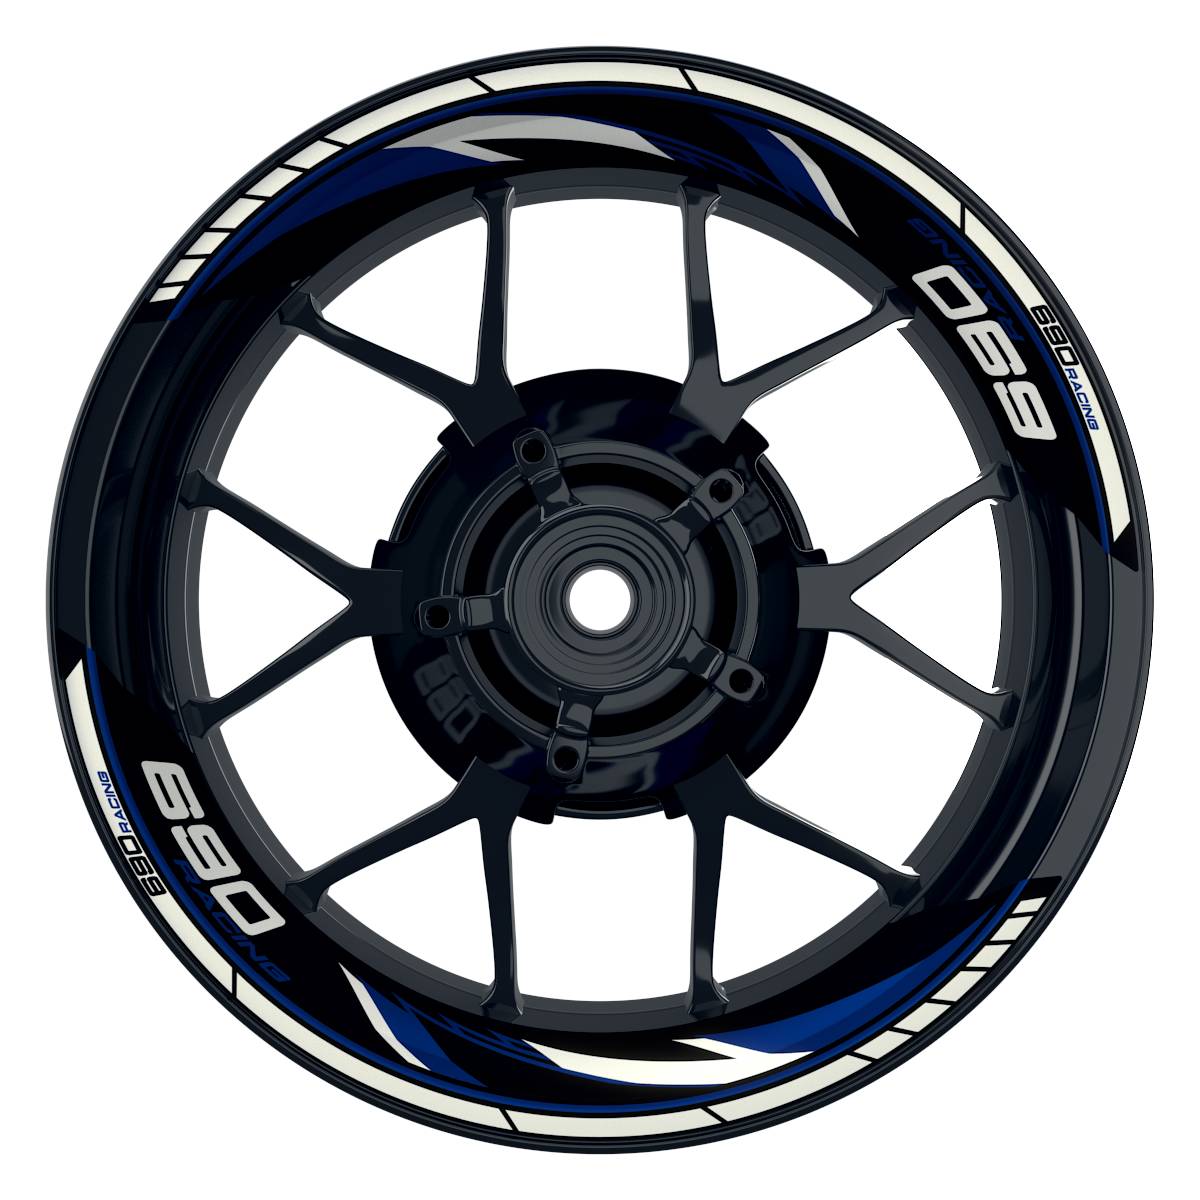 KTM Racing 690 Razor schwarz blau Frontansicht